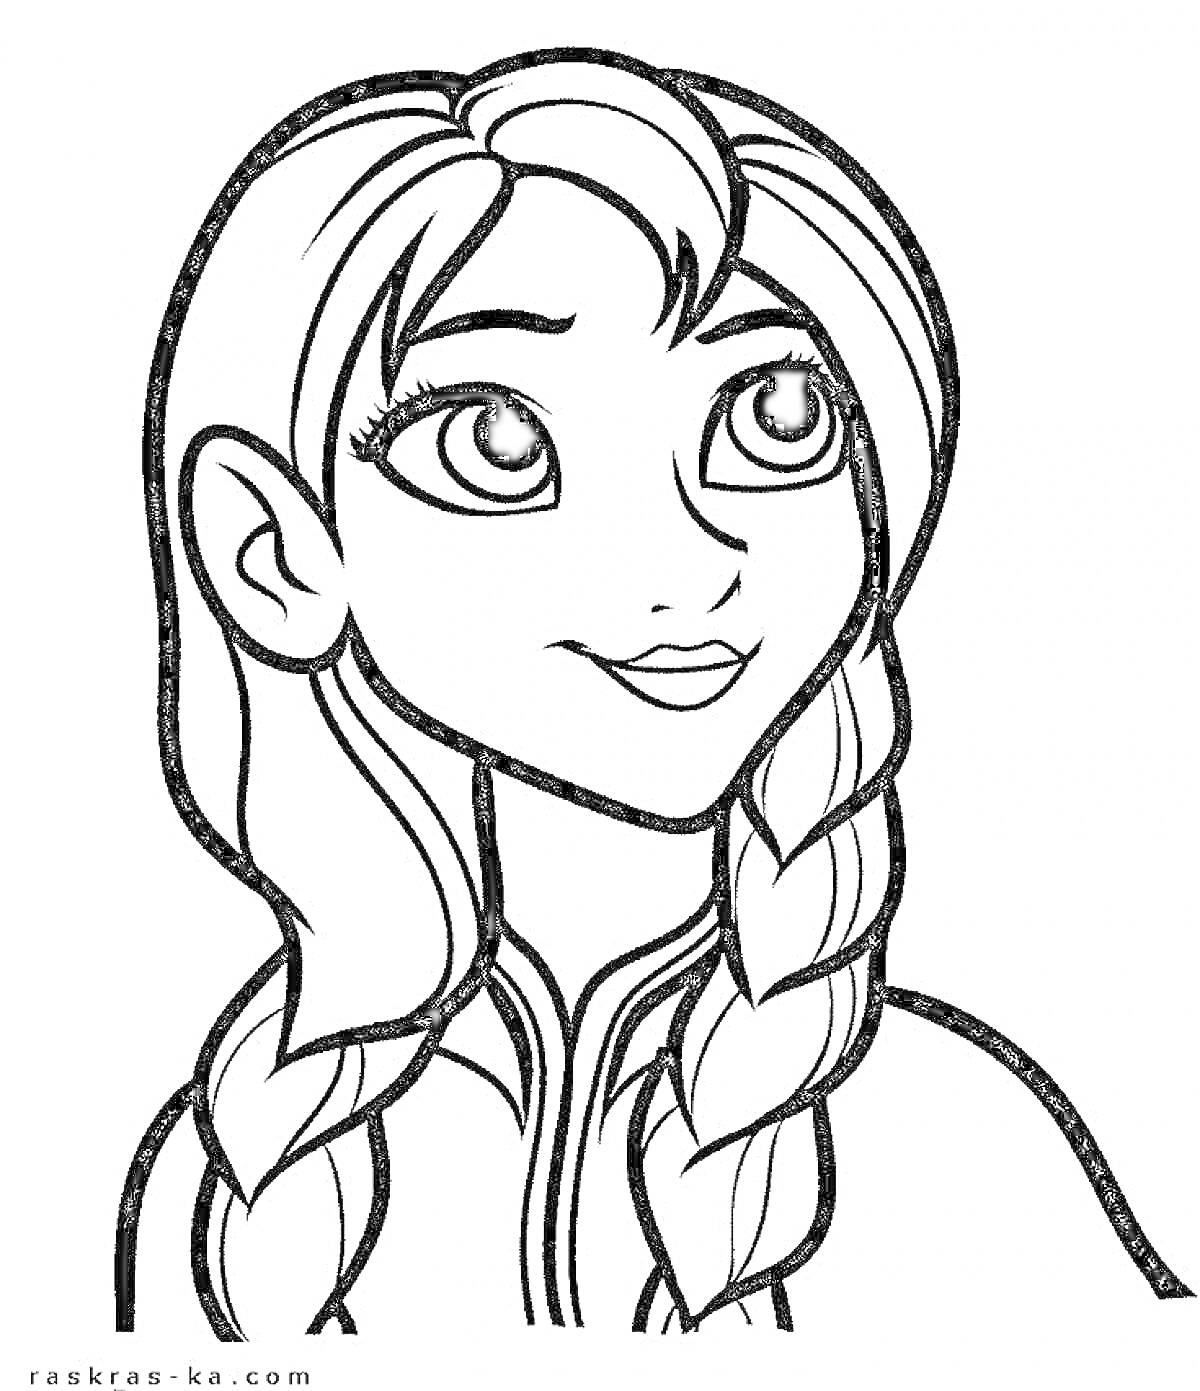 Раскраска Портрет девушки с двумя косами и широкой улыбкой